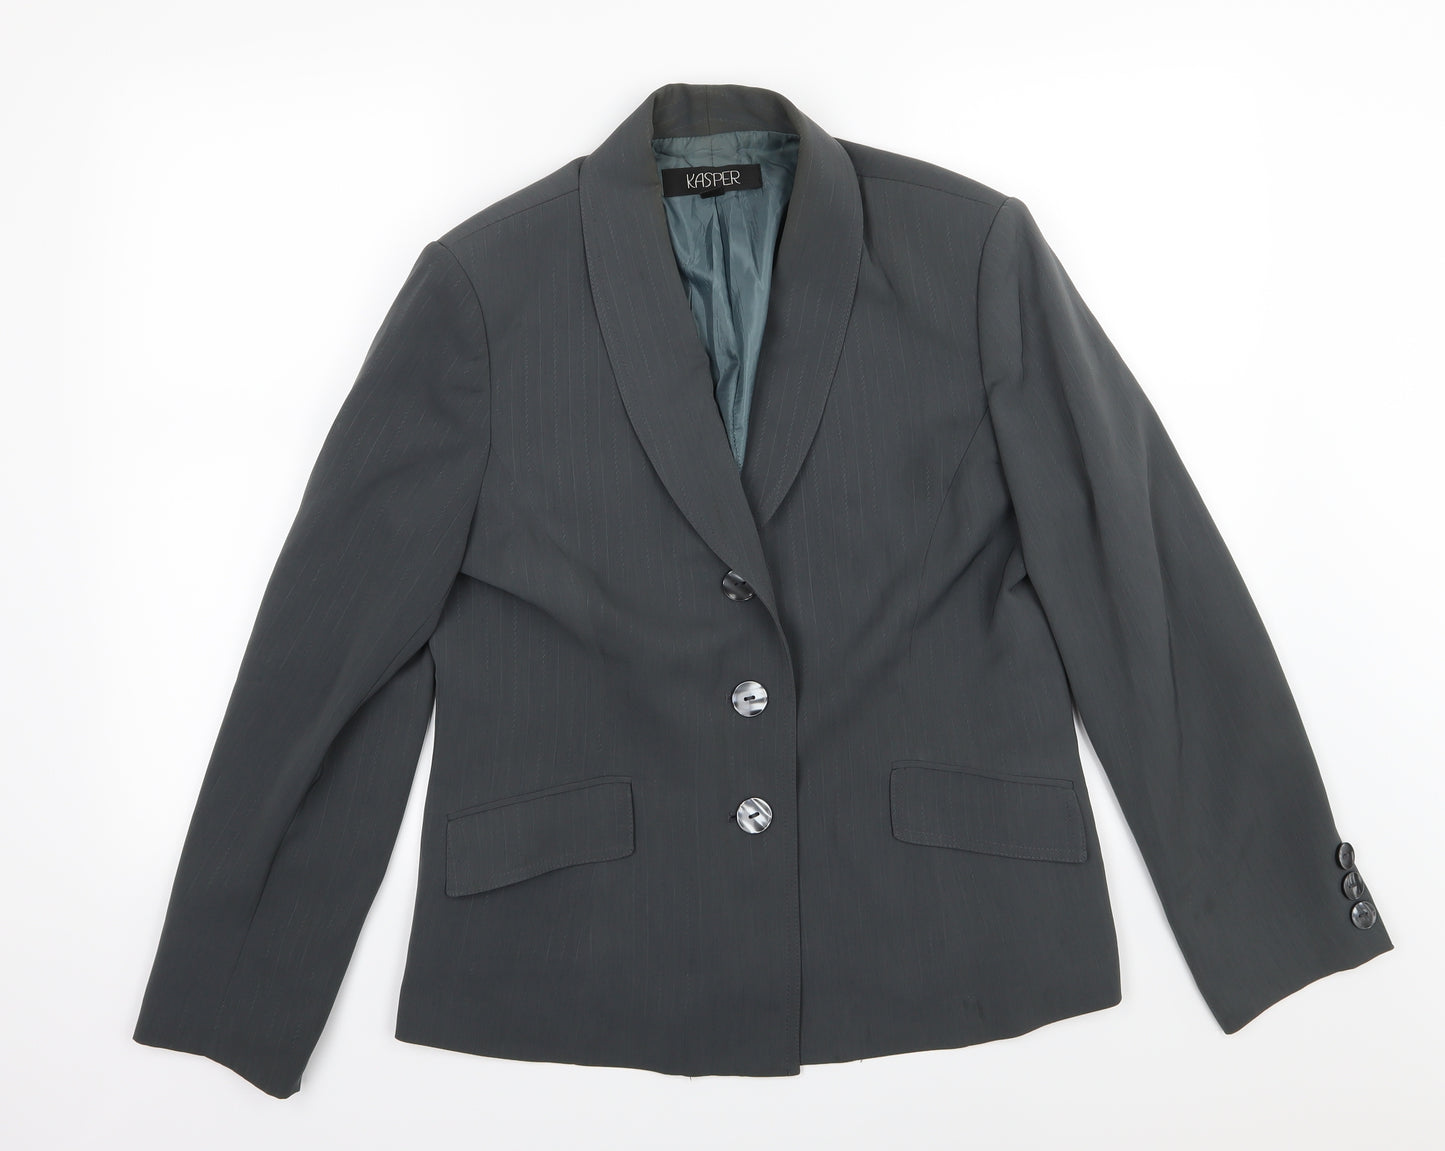 Kasper Womens Grey Striped Rayon Jacket Suit Jacket Size 12